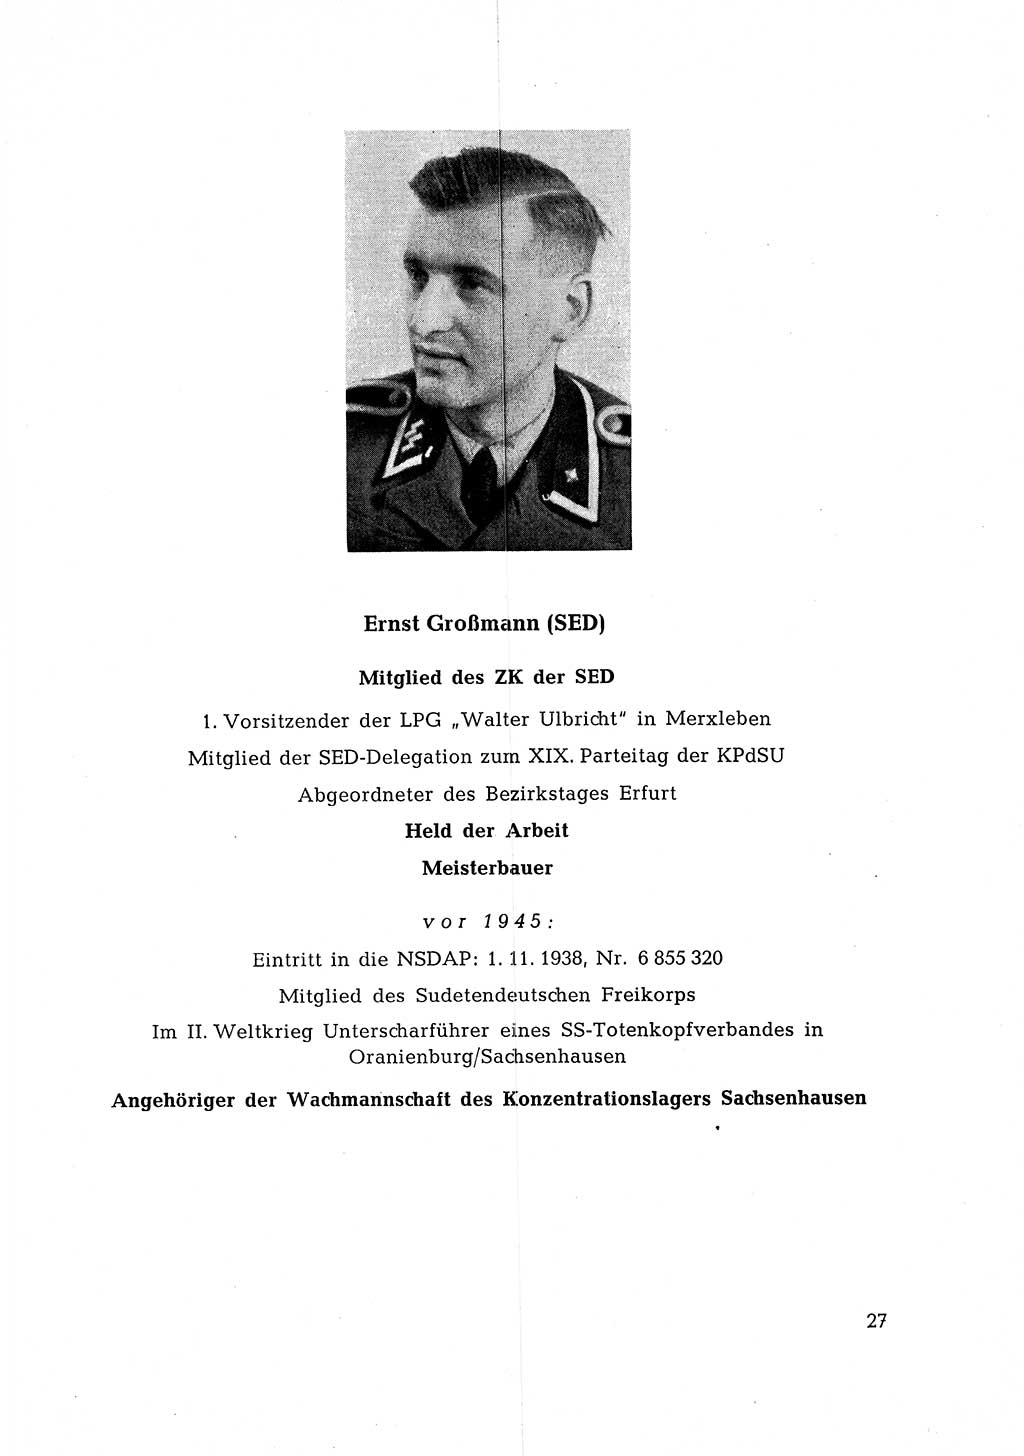 Ehemalige Nationalsozialisten in Pankows Diensten [Deutsche Demokratische Republik (DDR)] 1965, Seite 27 (Ehem. Nat.-Soz. DDR 1965, S. 27)